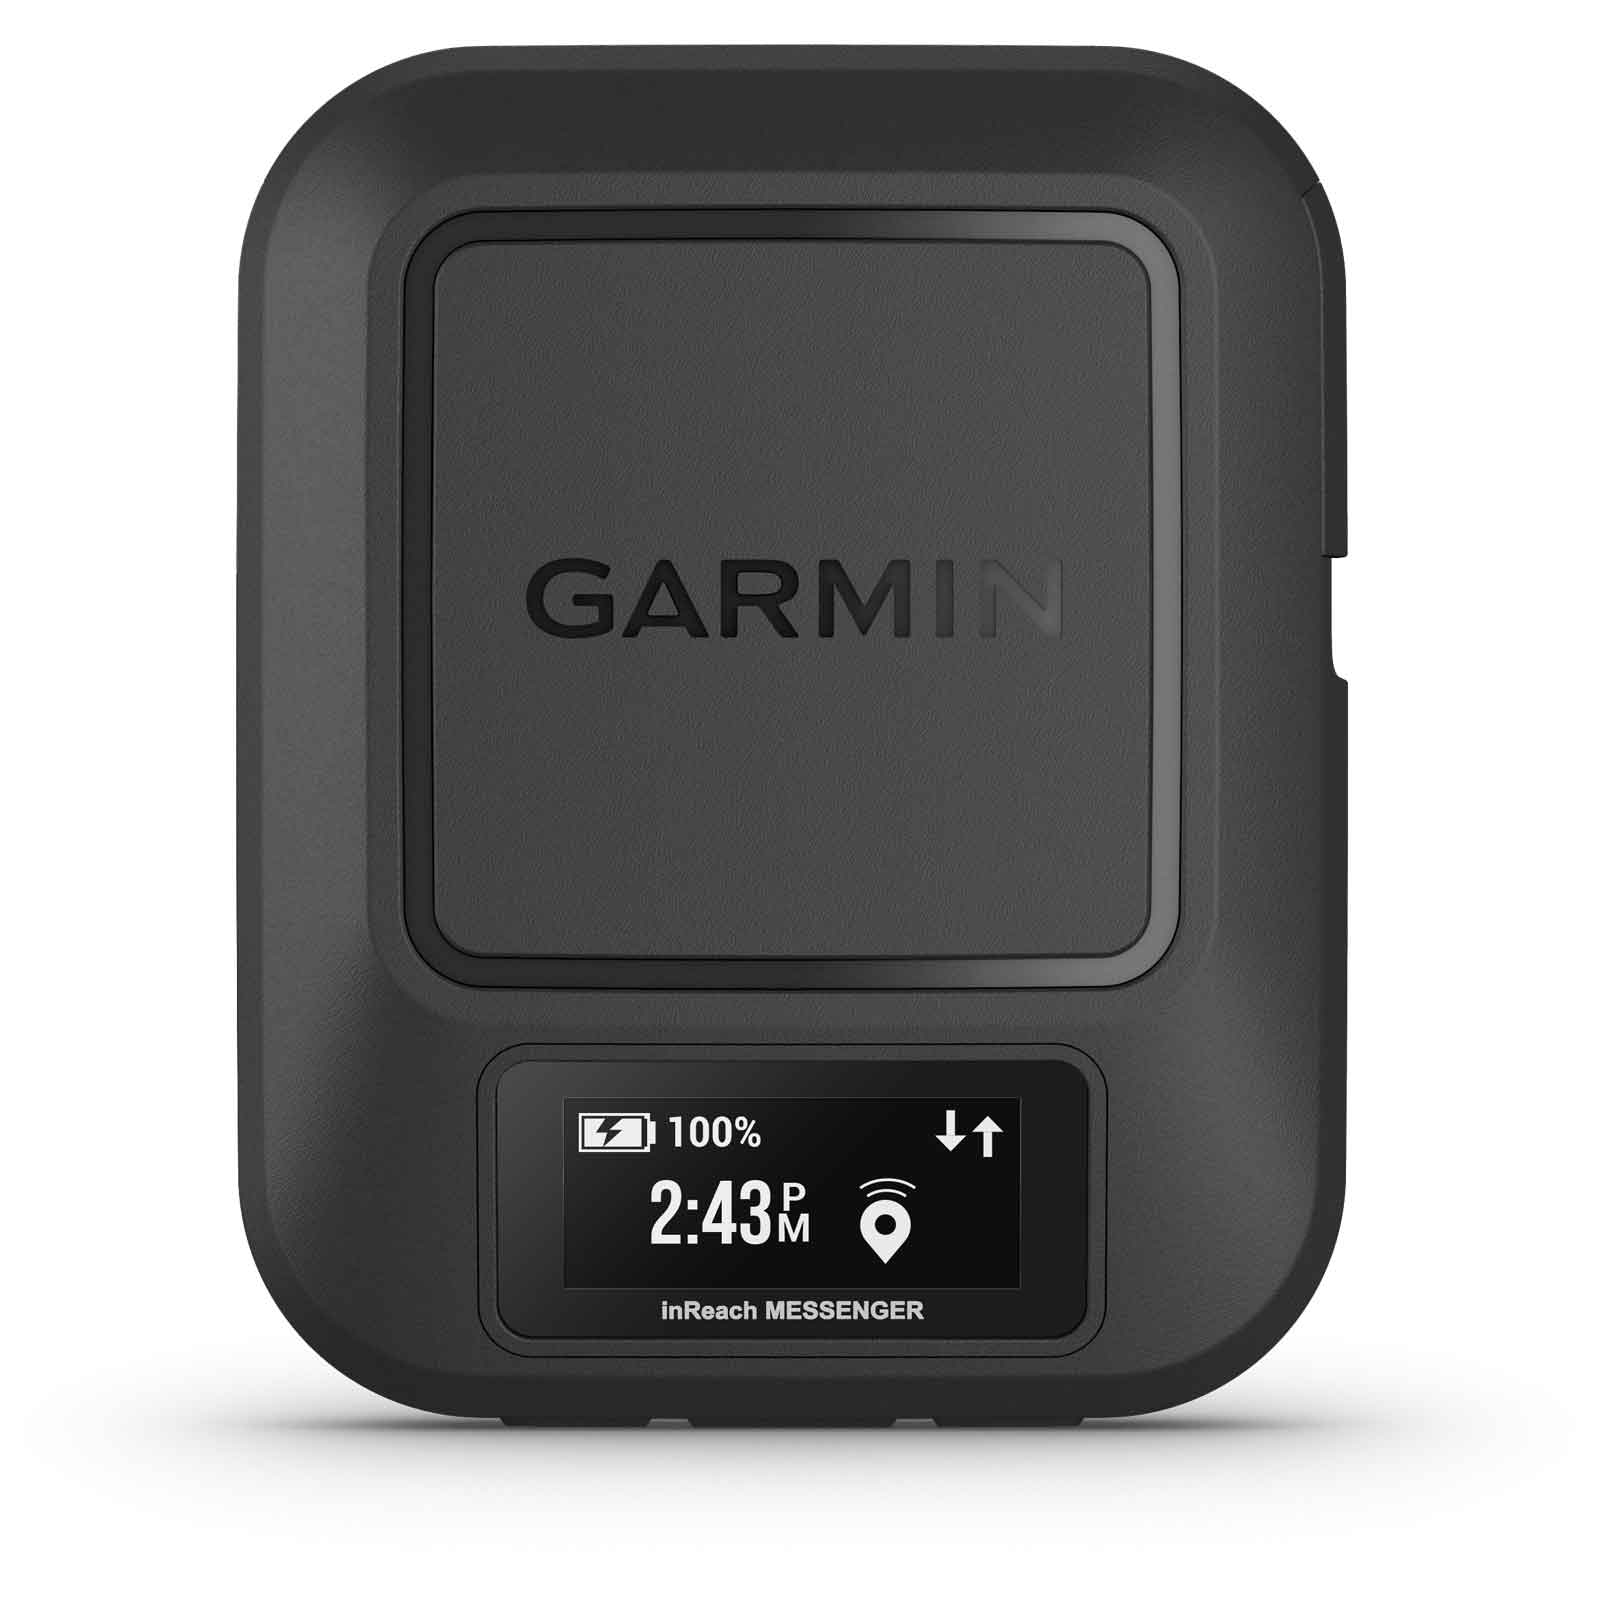 Produktbild von Garmin inReach Messenger GPS Satelliten-Kommunikationsgerät